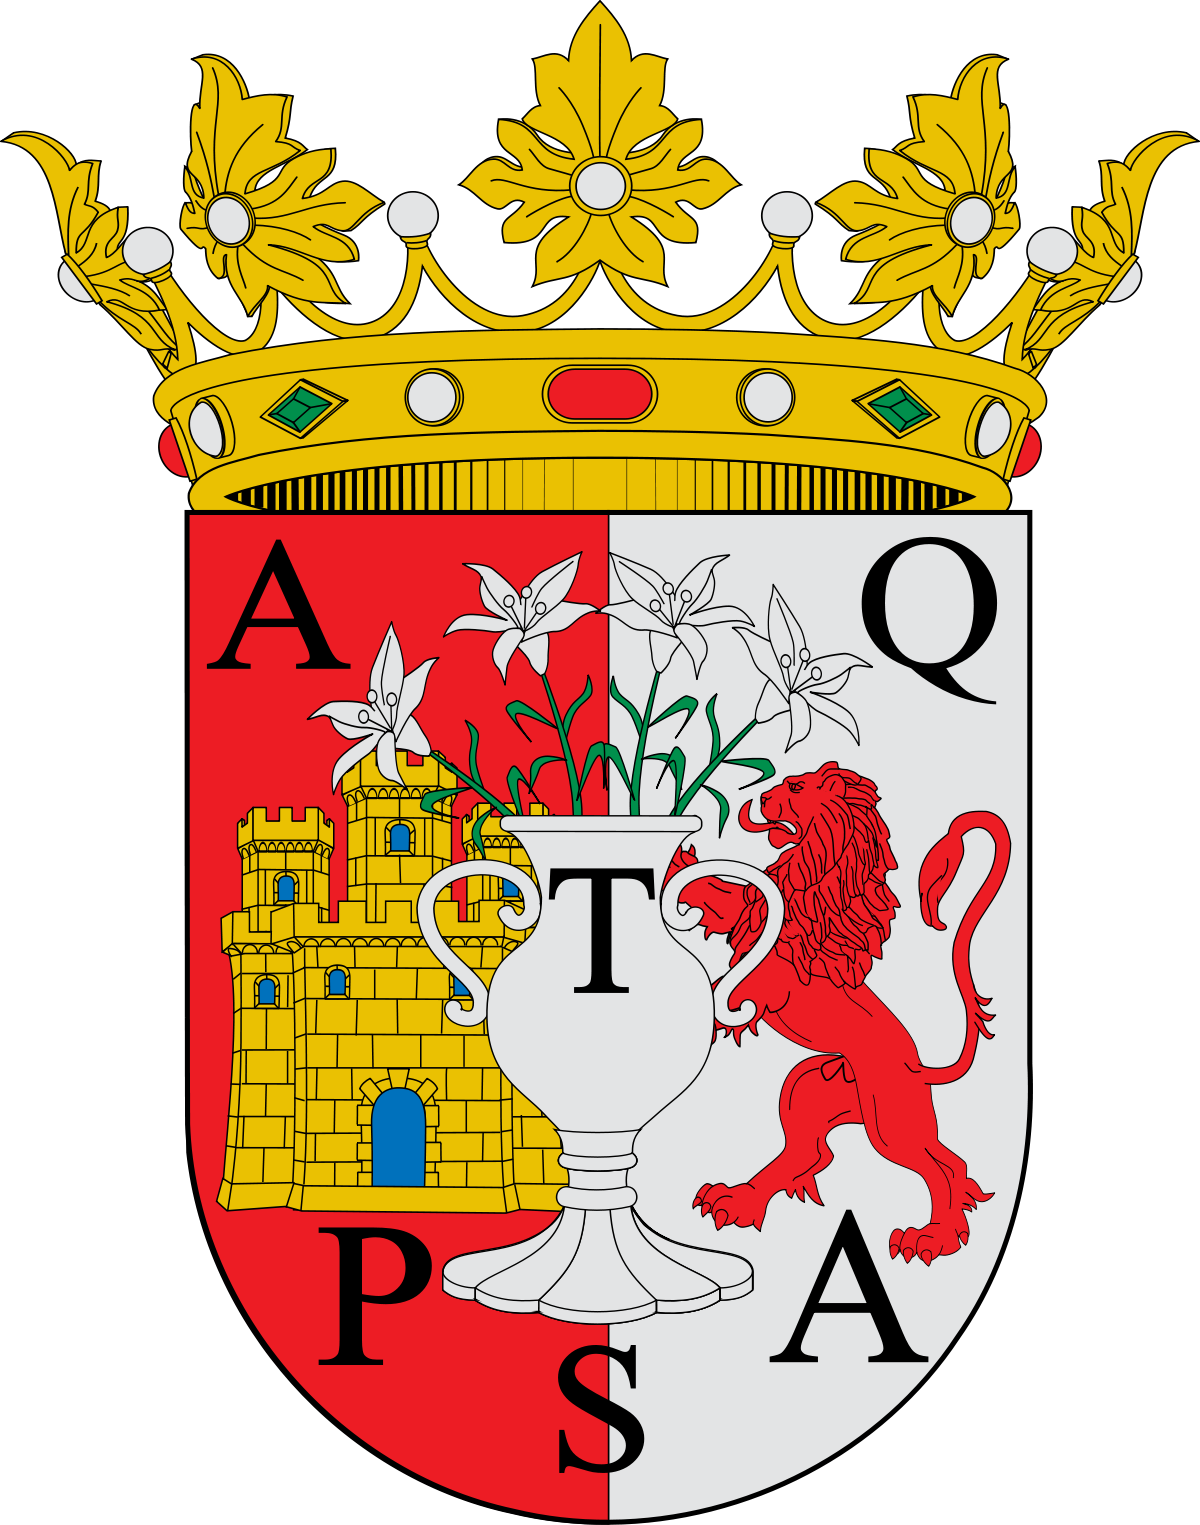 Antequera